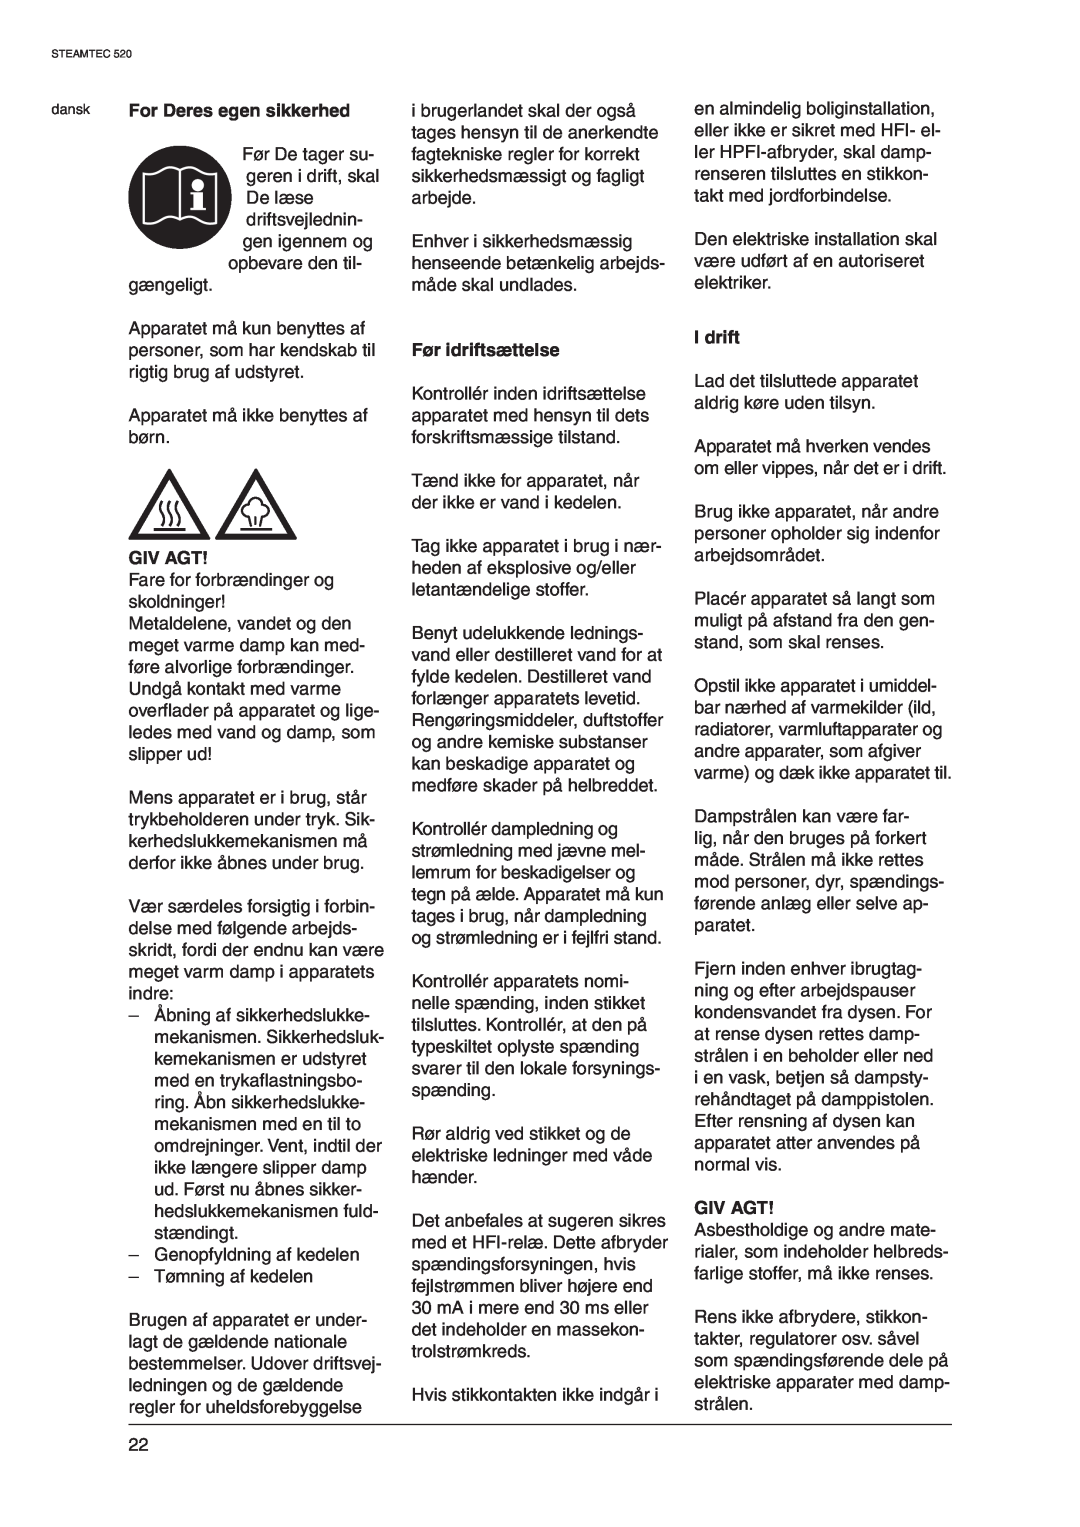 Nilfisk-ALTO 520 manual For Deres egen sikkerhed, Giv Agt, Før idriftsættelse, I drift 